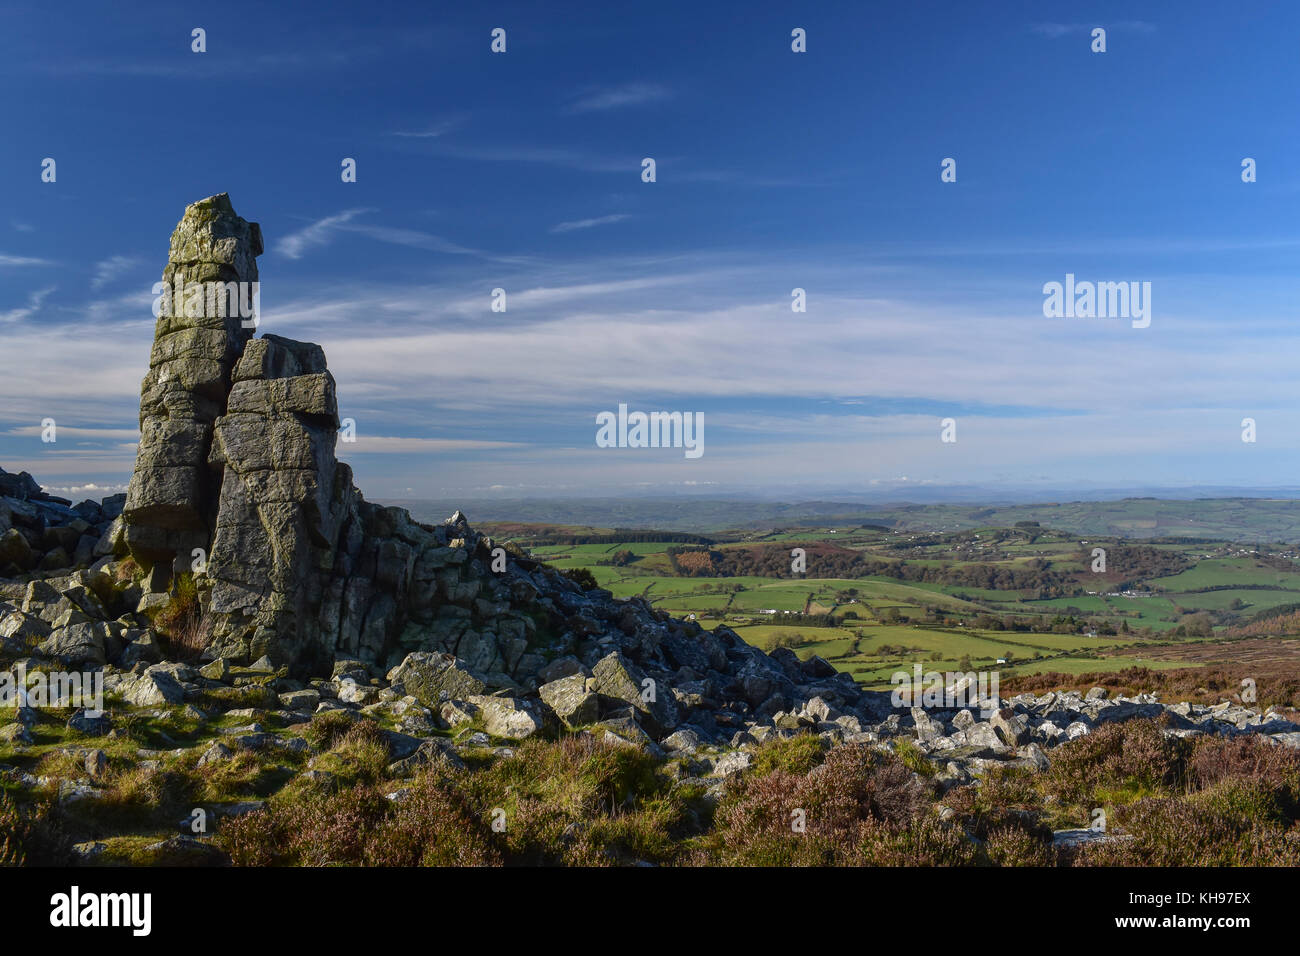 Rock formations sur les stiperstones dans le Shropshire, zone d'une beauté naturelle. Banque D'Images